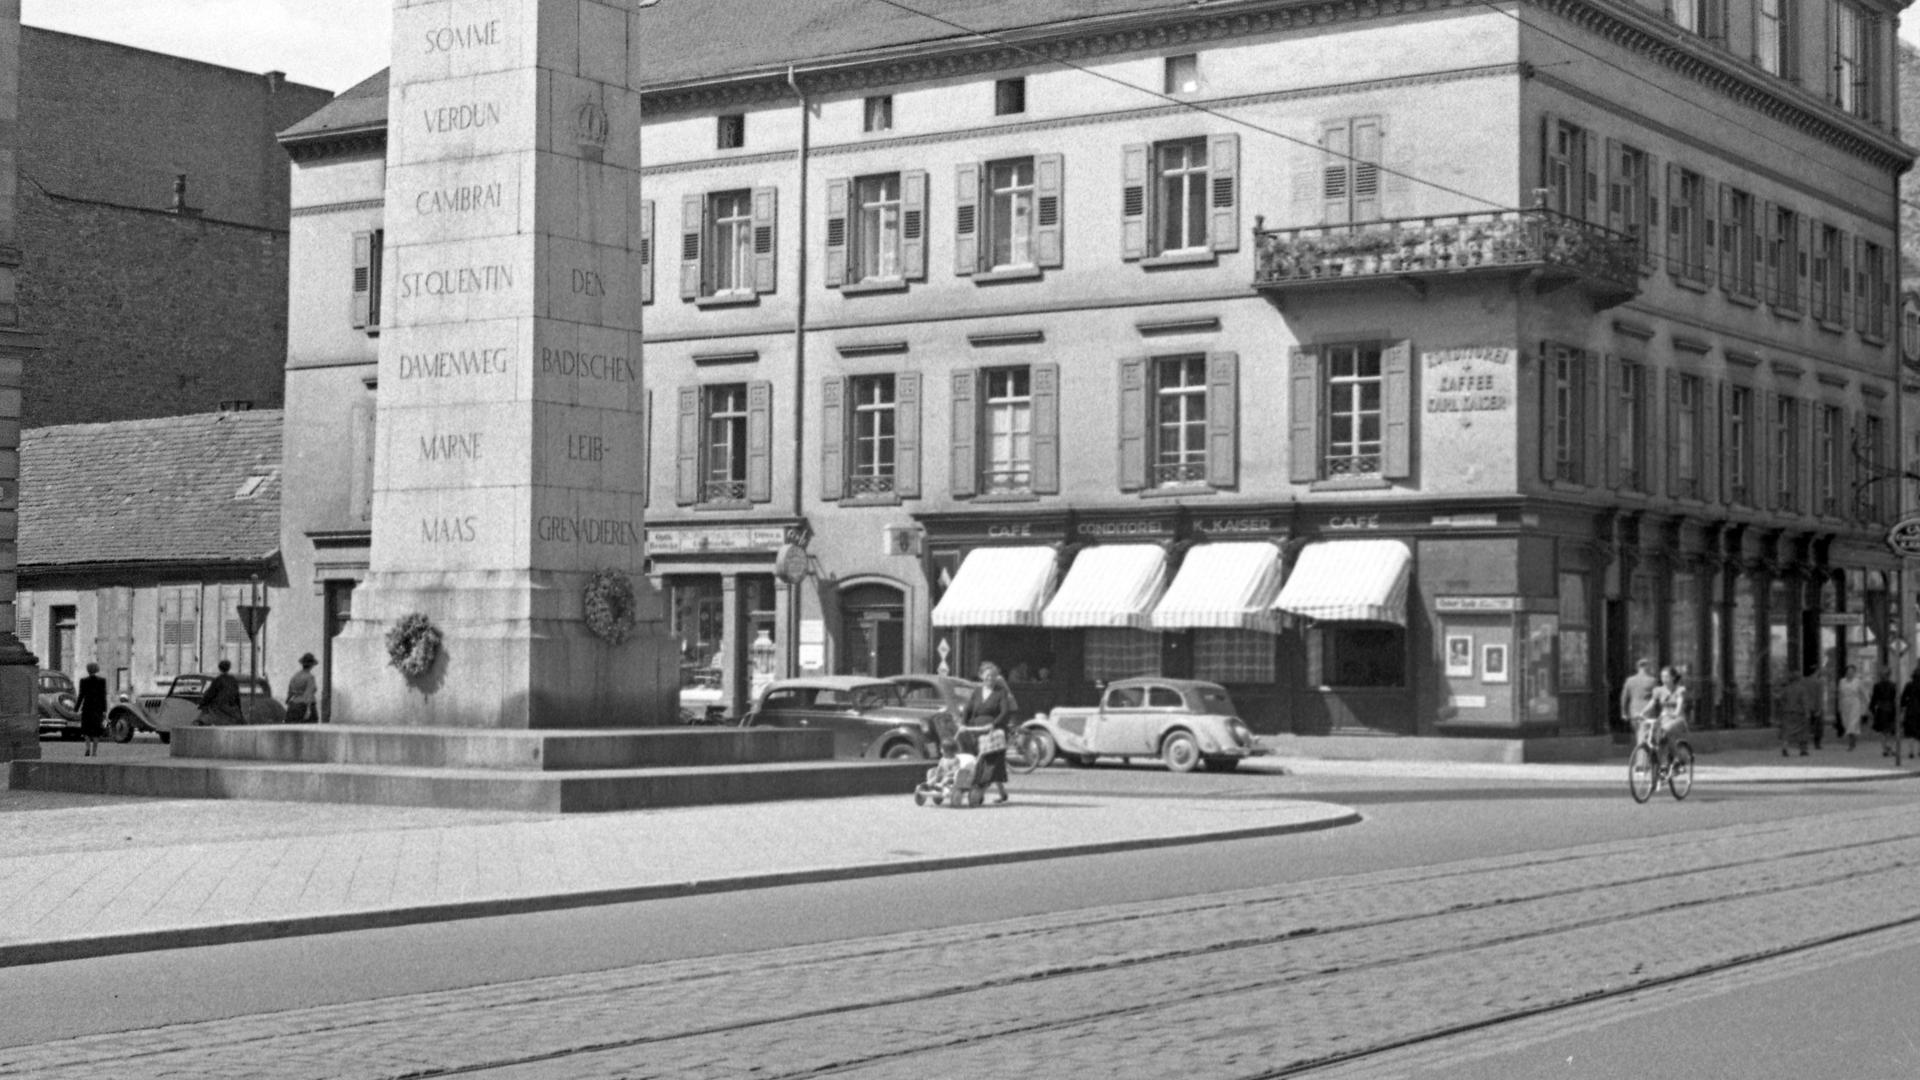 Straßenbild aus Karlsruhe, aufgenommen Mitte der 1950er Jahre